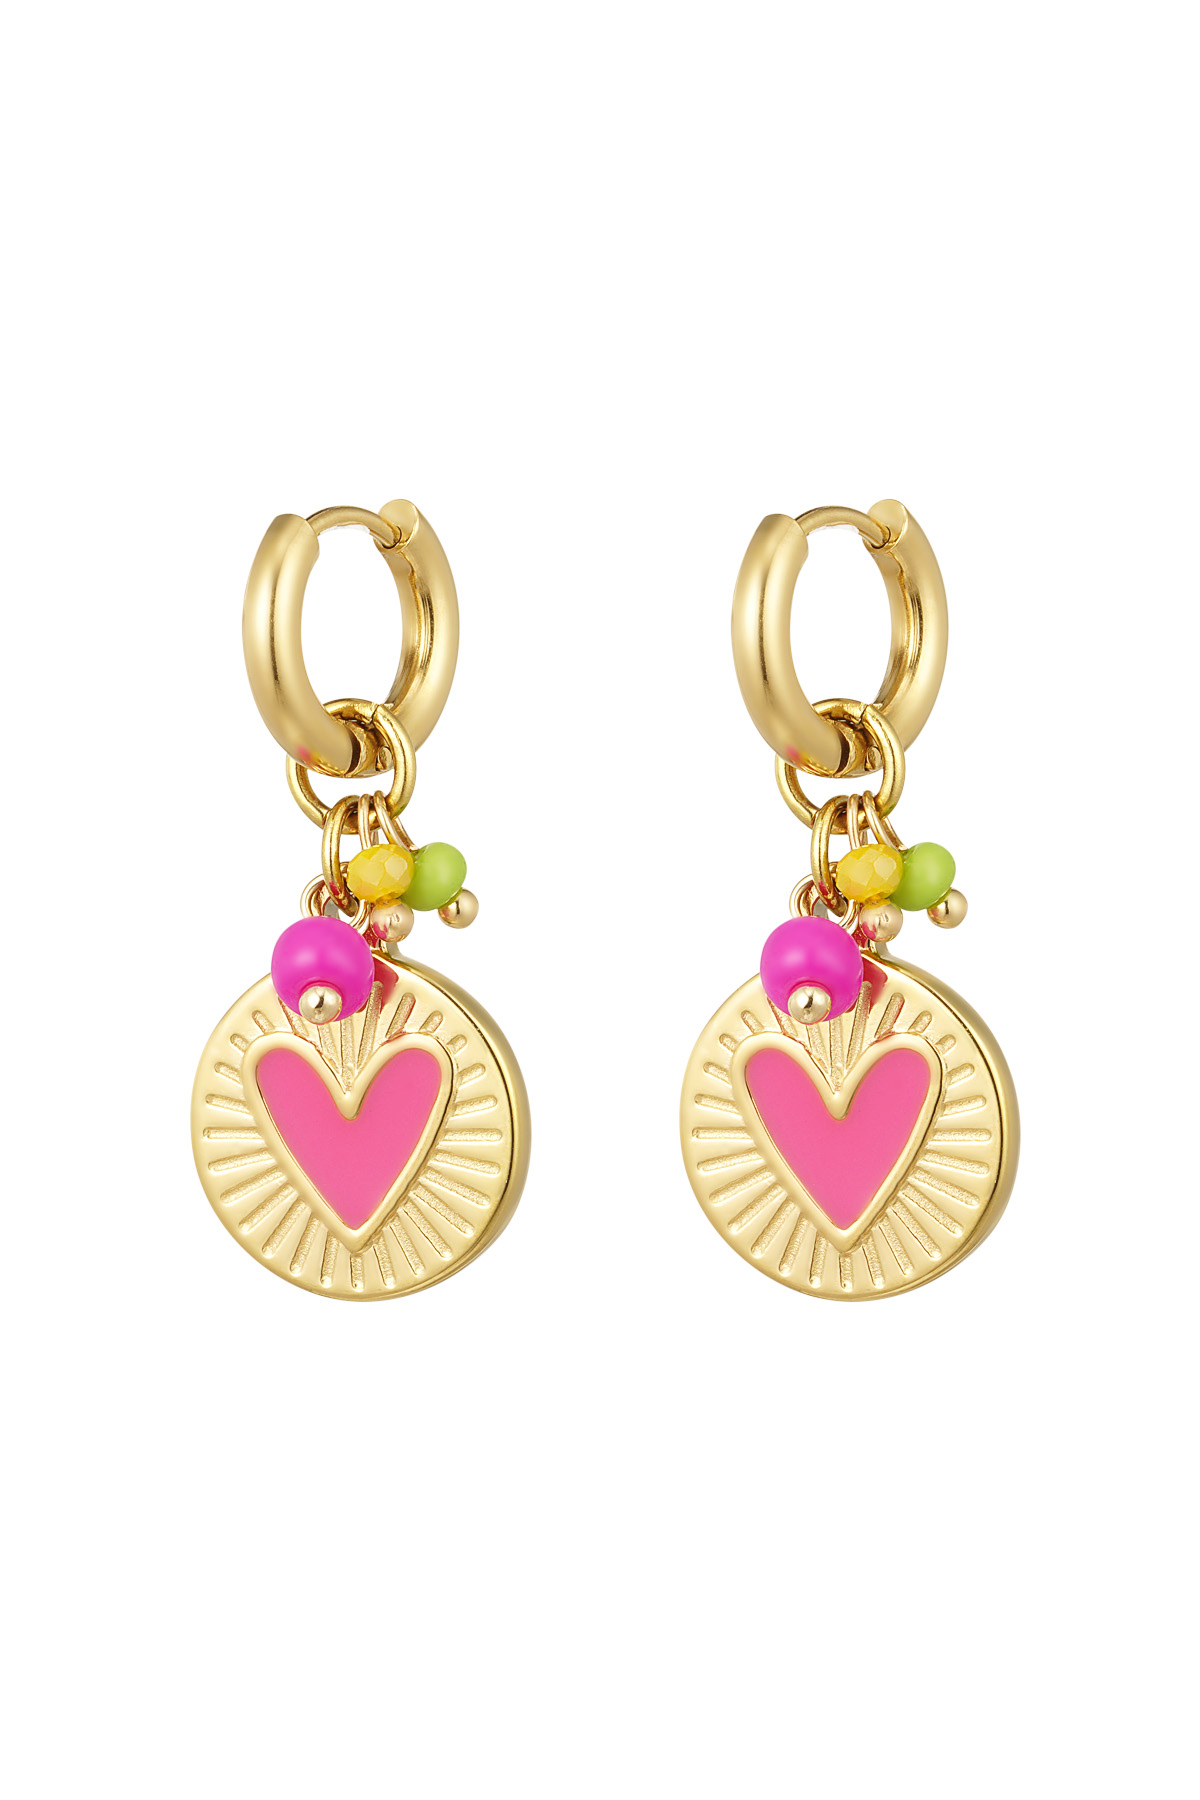 Boucles d'oreilles pendentif pièce de monnaie avec coeur rose - or